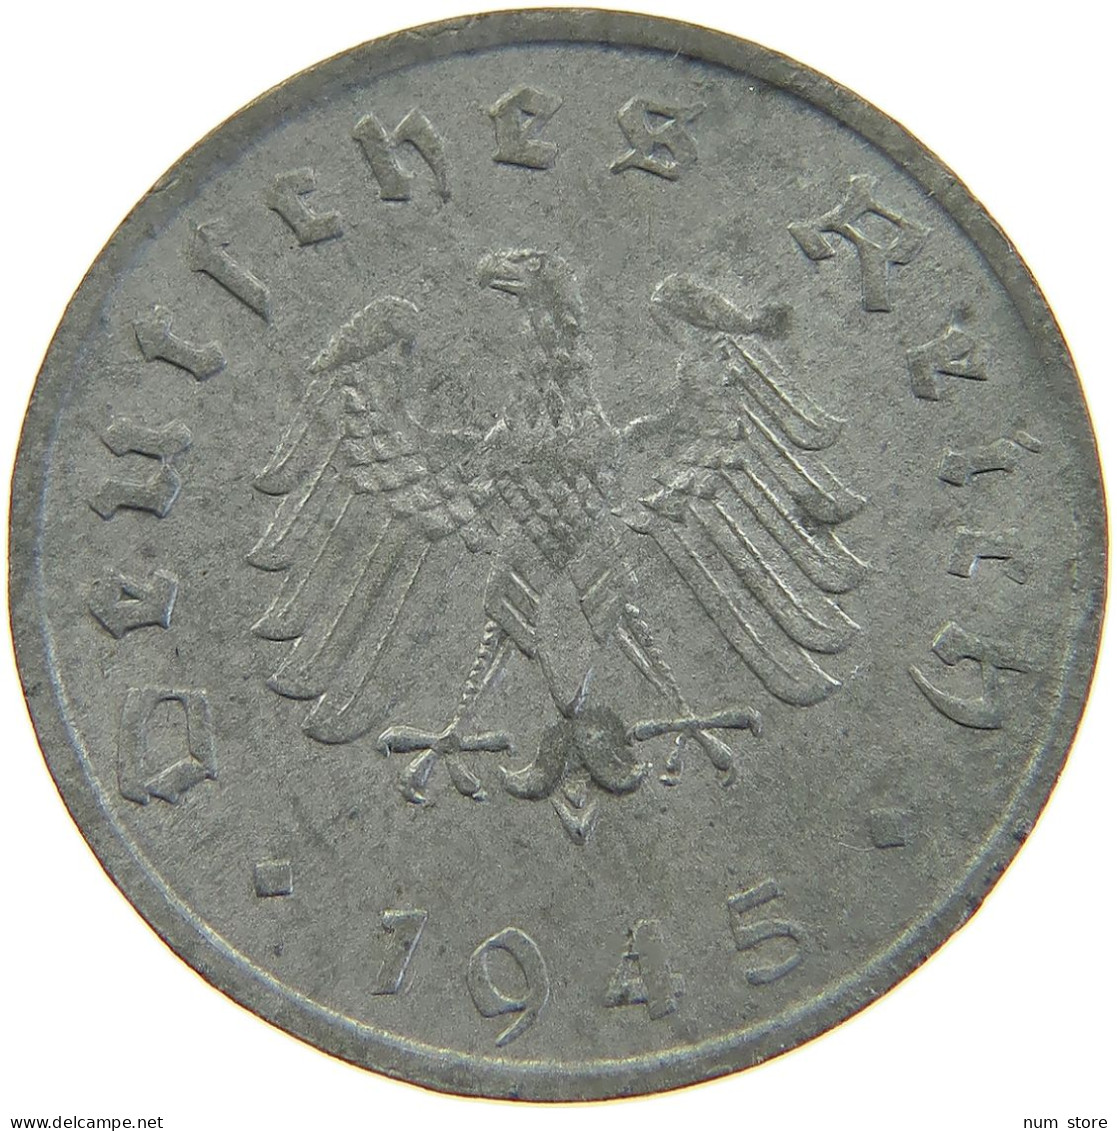 ALLIIERTE BESETZUNG 10 REICHSPFENNIG 1945 F  #MA 102754 - 10 Reichspfennig